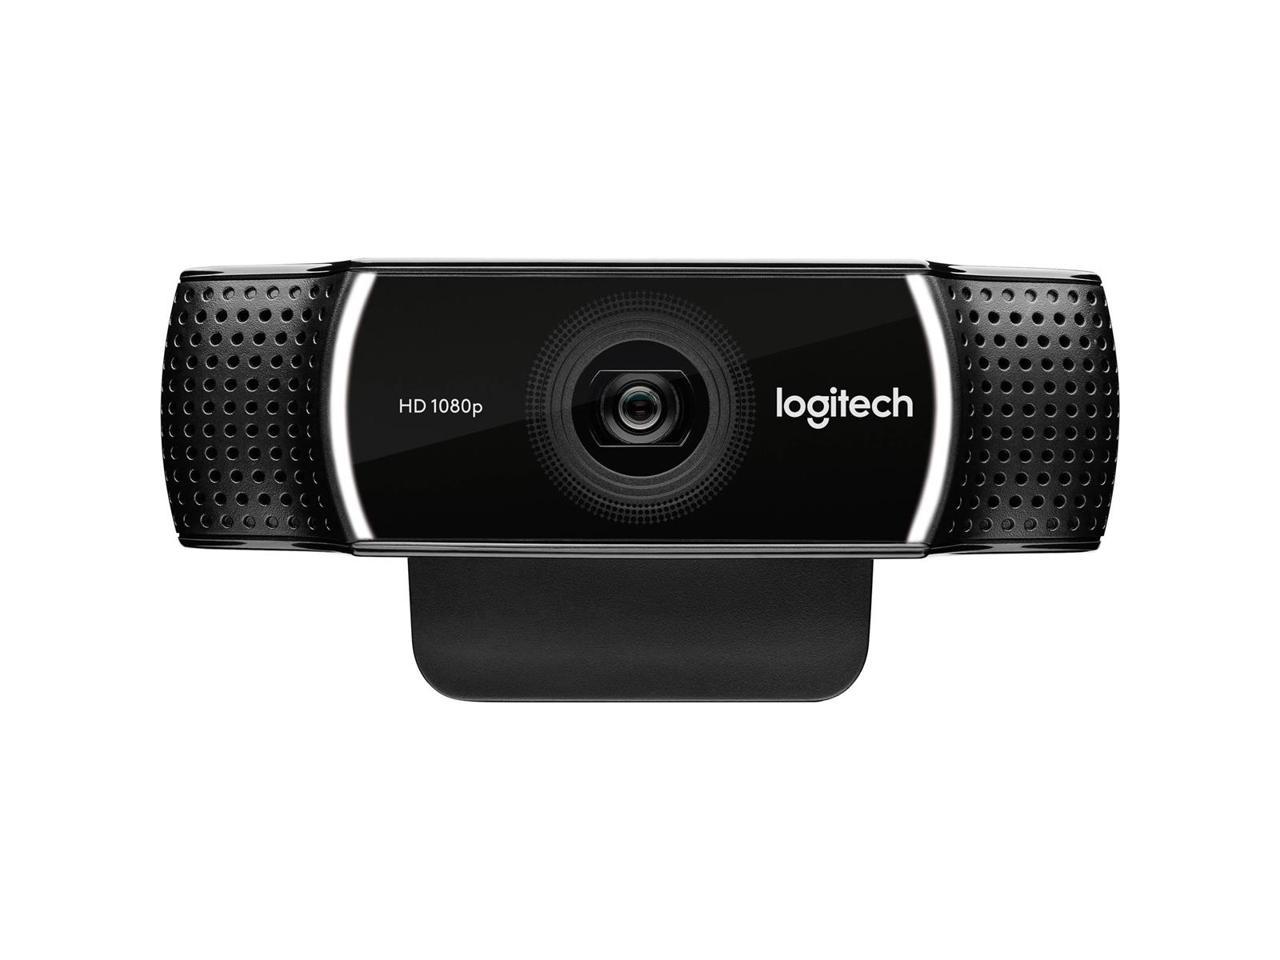 Logitech Hd Pro Webcam C922 Cmara Web Color 720p 1080p 